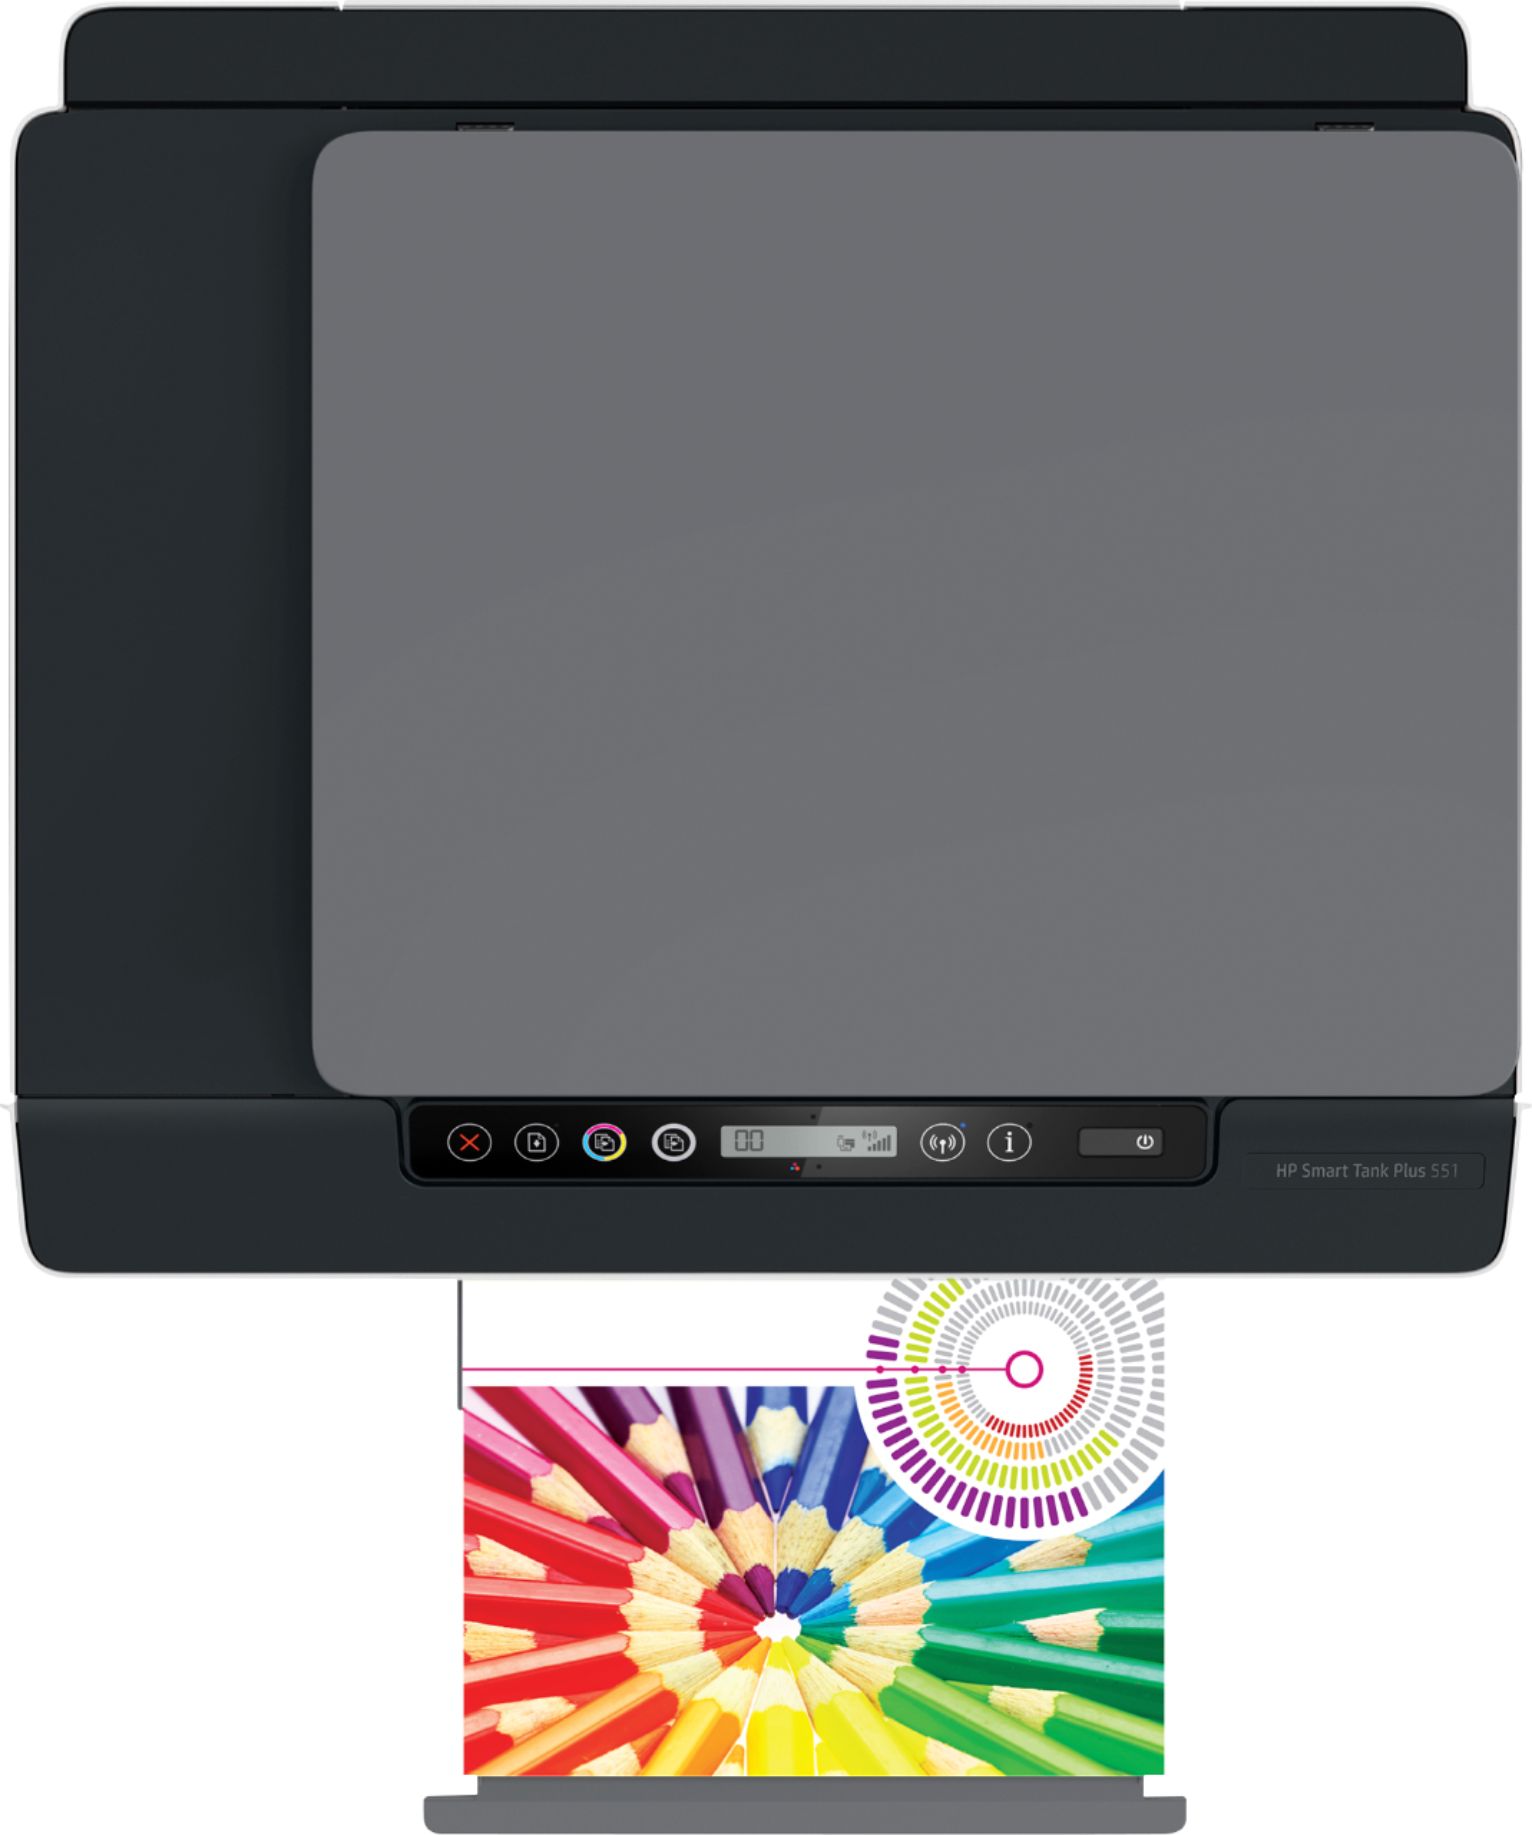 Best Buy: HP Smart Tank Plus 551 Wireless All-In-One Inkjet Printer  6HF11A#B1H